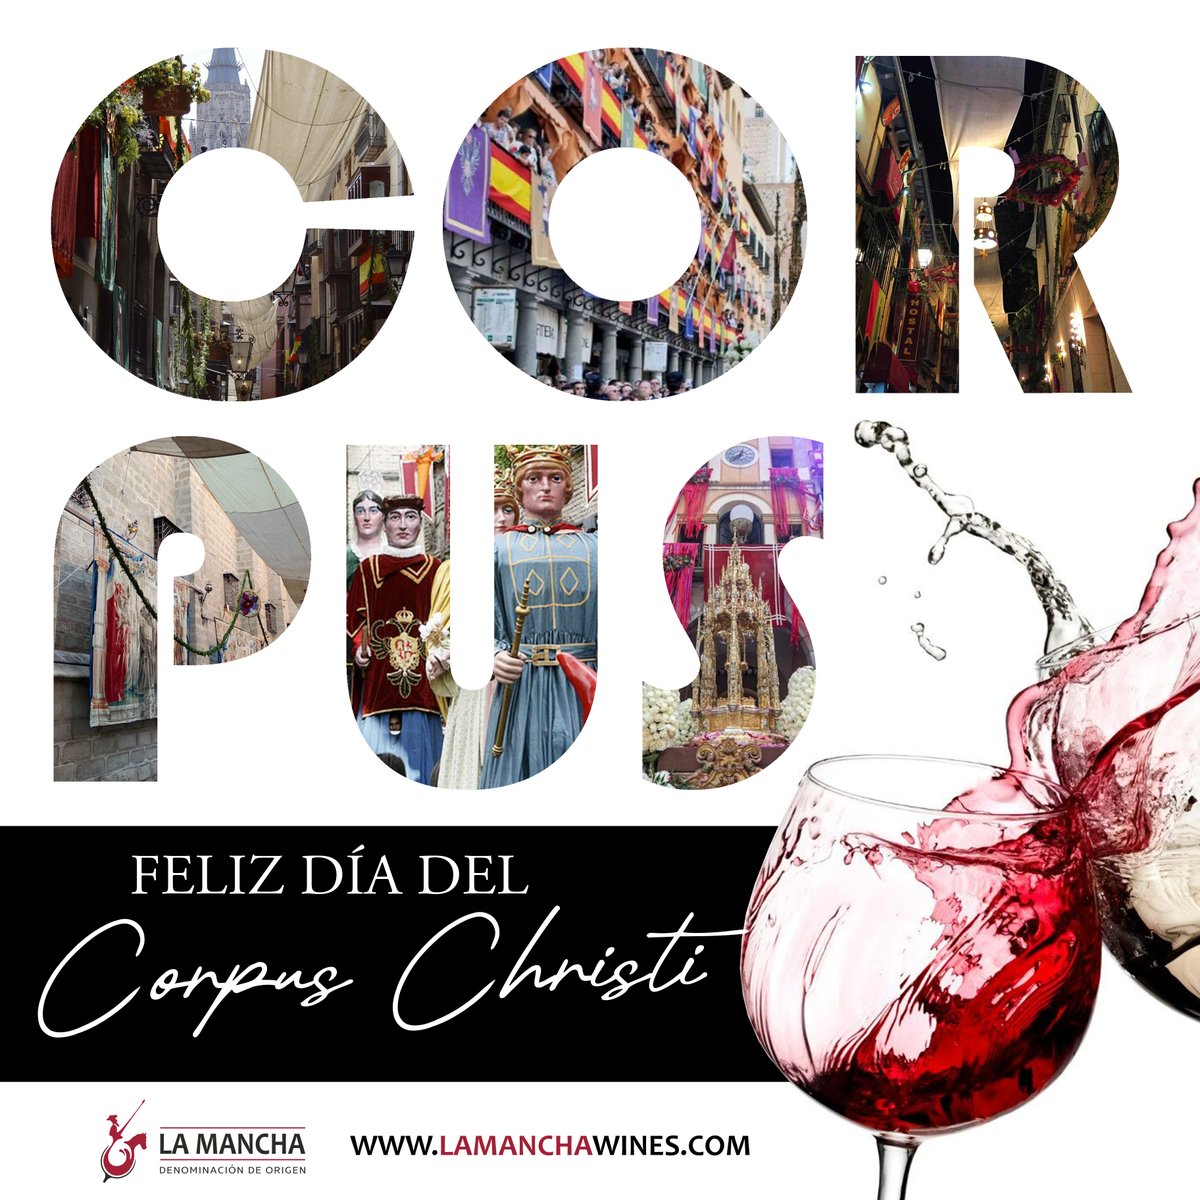 Tradición, cultura, pasión... ¡Feliz Día del Corpus Christi! ✅
.
#vinodelamancha #CastillaLaMancha #corpuscristi #turismo #DOLaMancha #winelover #tradución #cultura